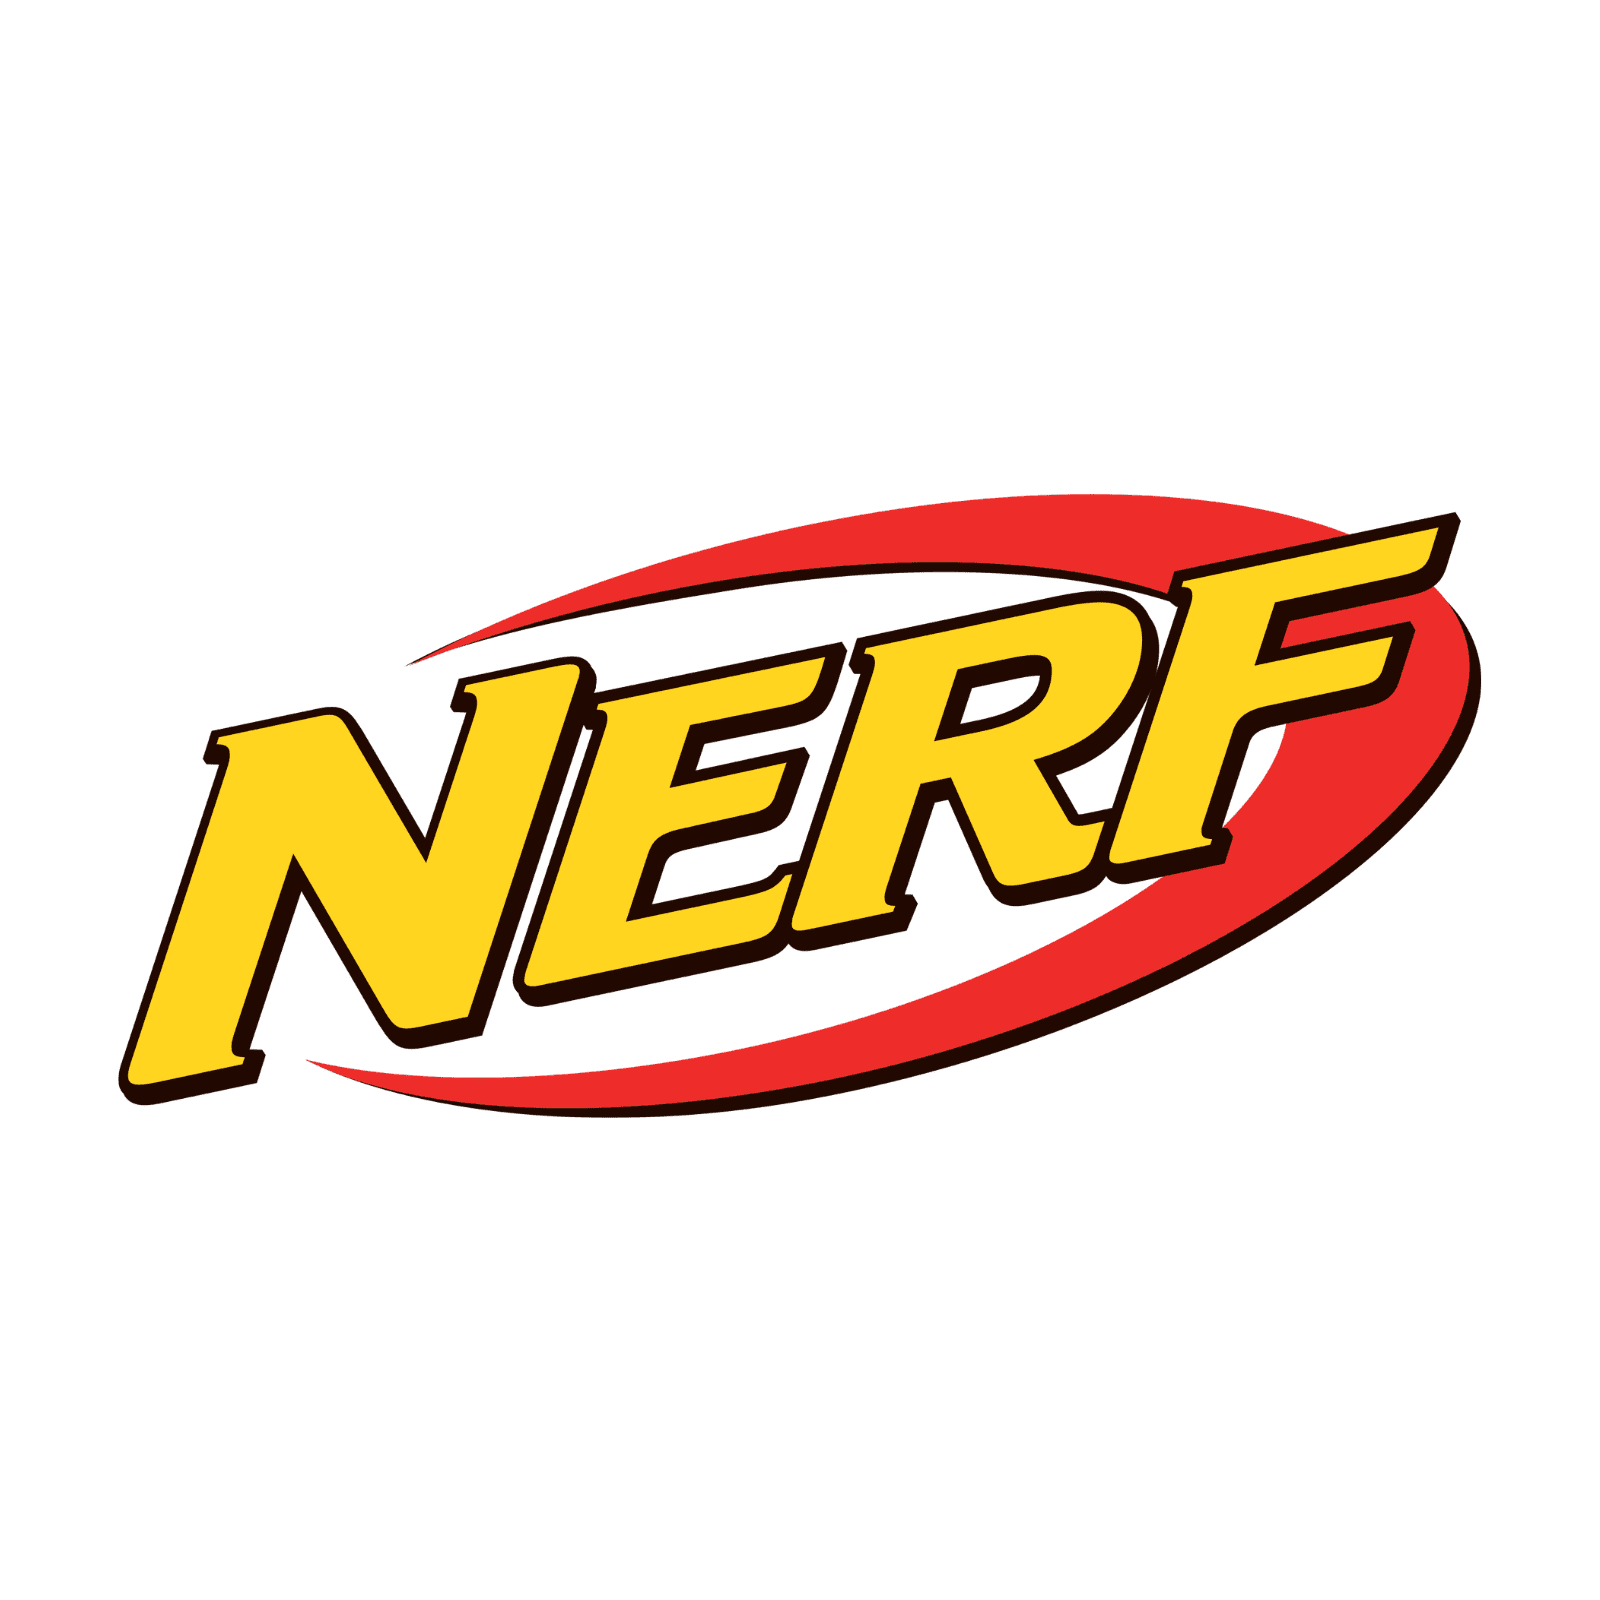 nerf-logo